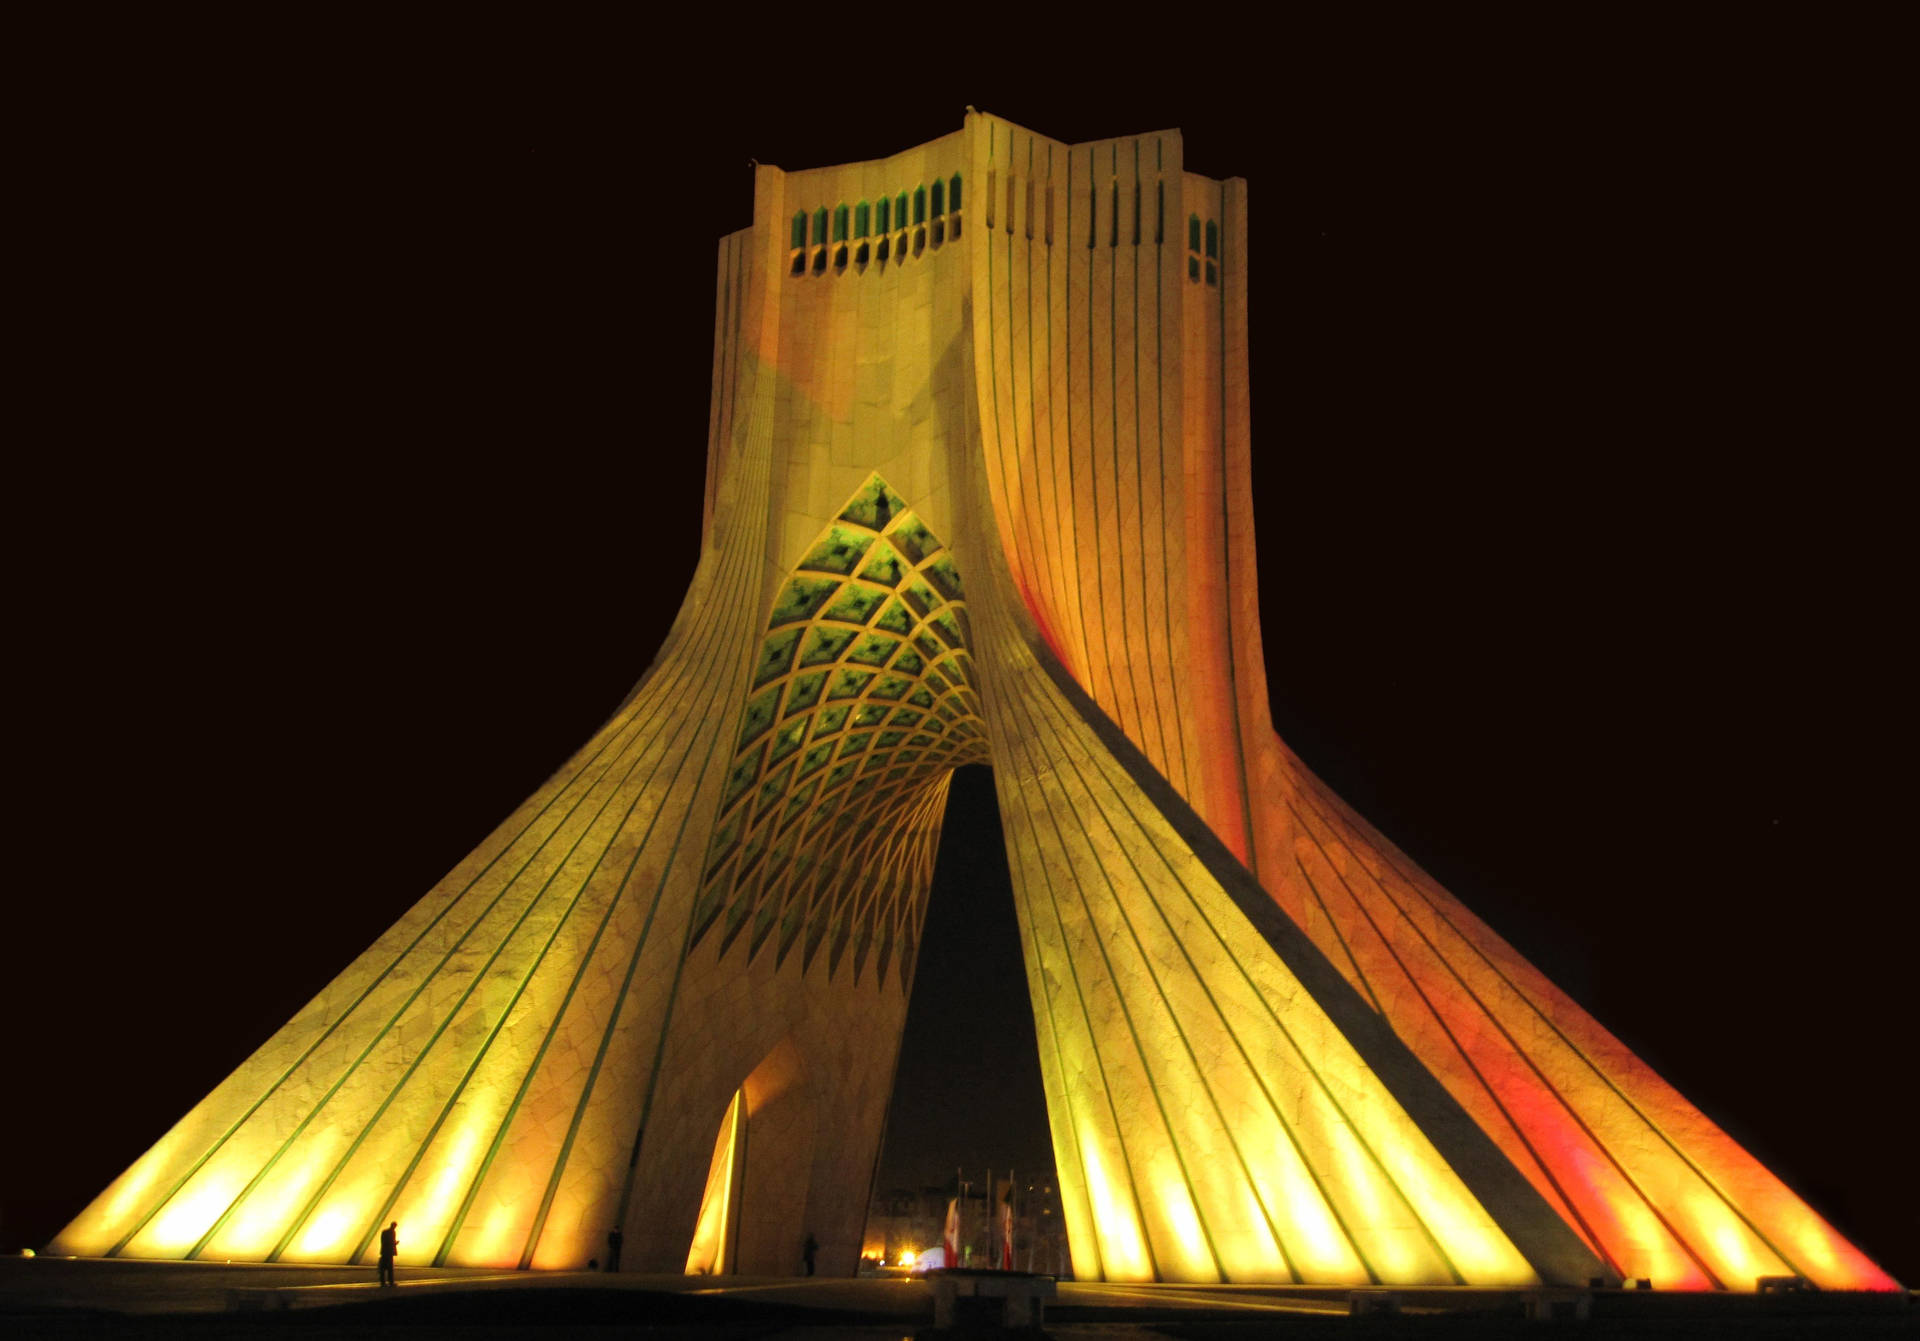 Tehranturmbeleuchtung Wallpaper